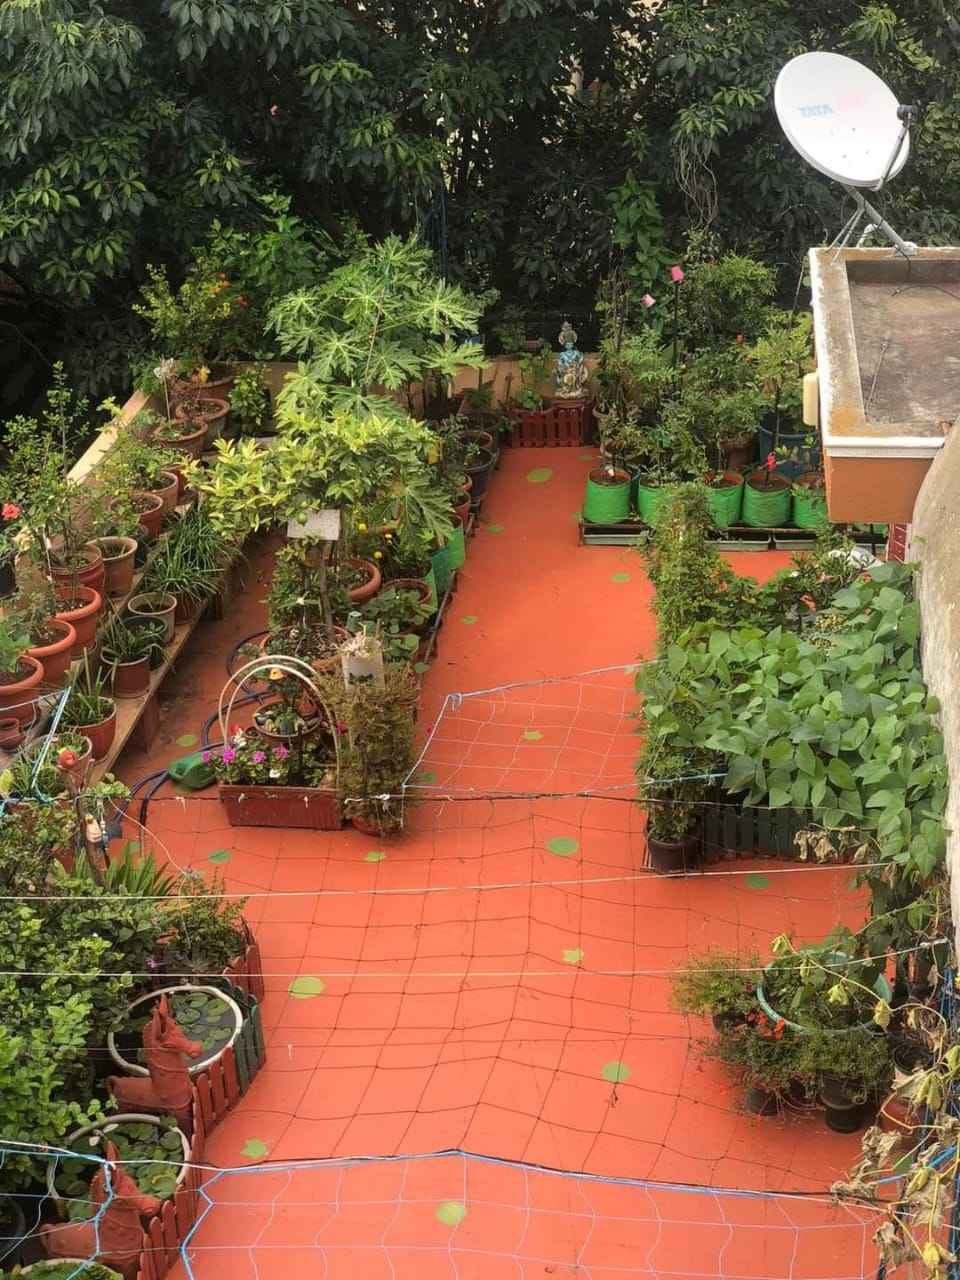 Durgadevi Panneerselvam's garden